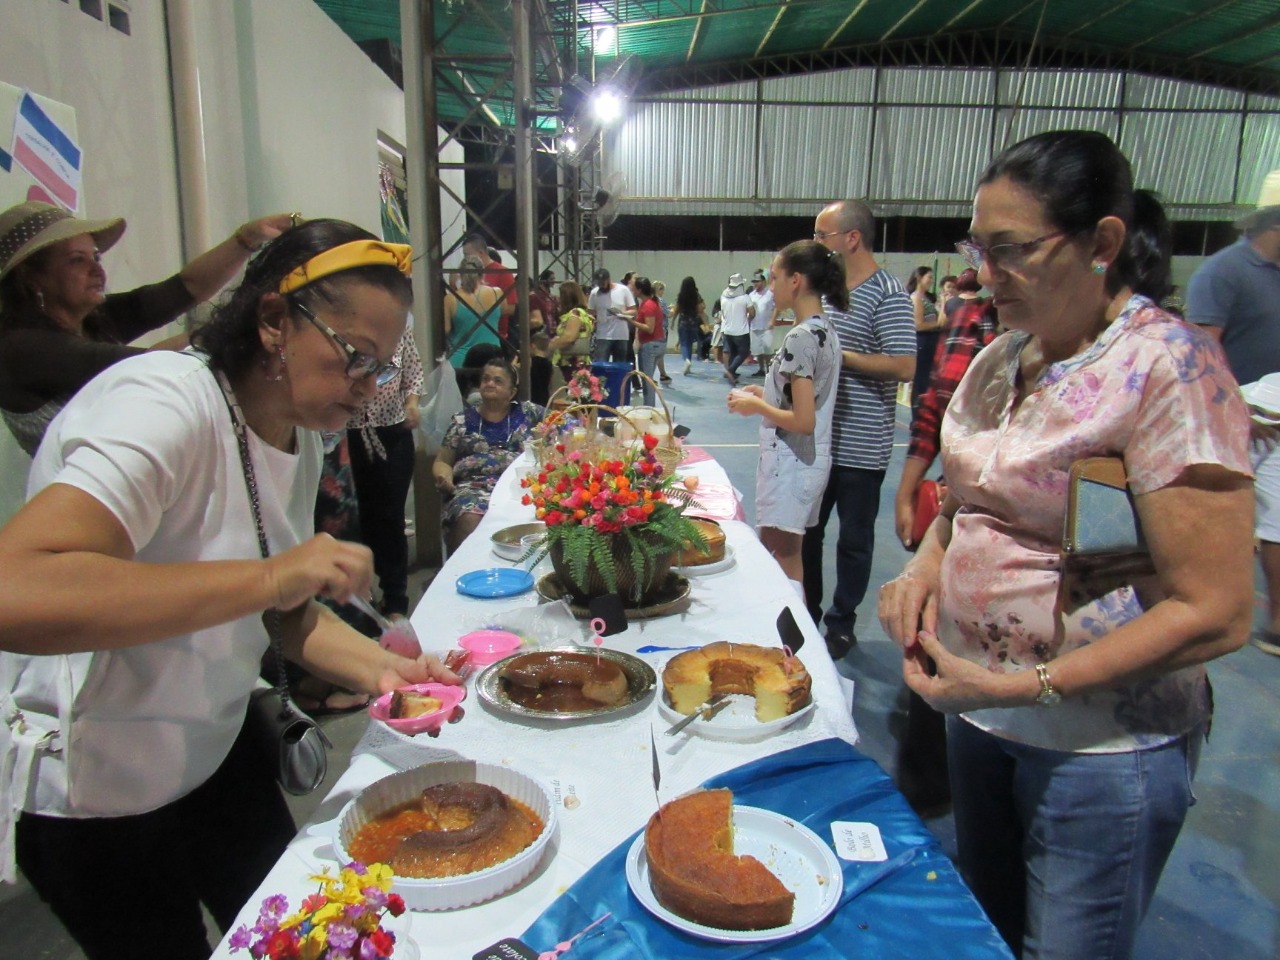 Festa dos Estados oferece comidas das regiões brasileiras neste sábado em Boa Vista